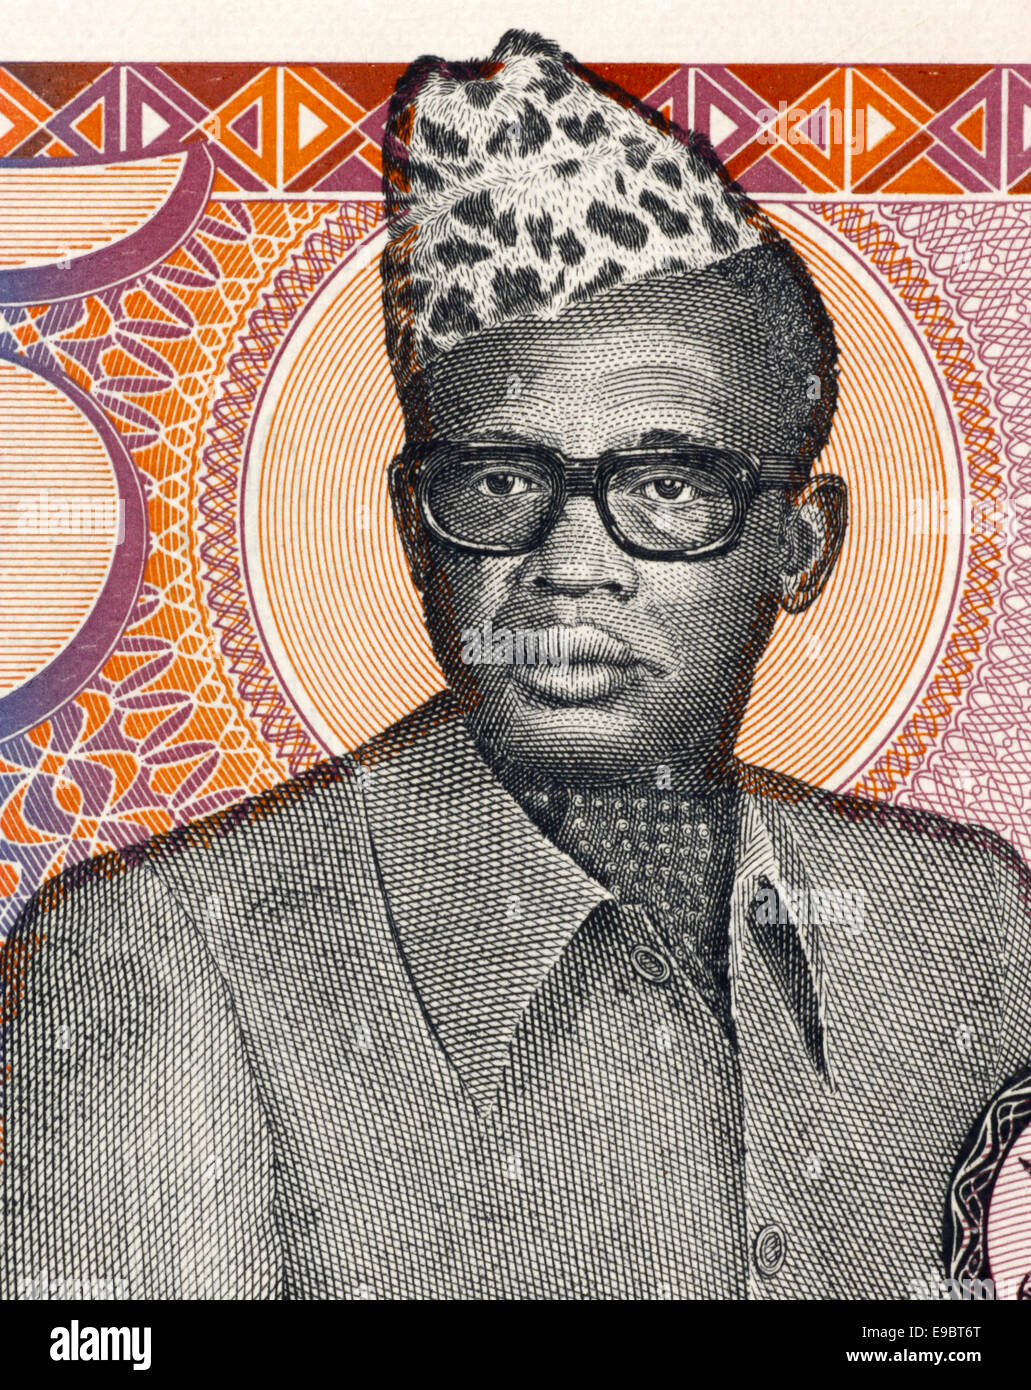 Mobutu Sese Seko (1930-1997) auf 5 Zaires 1985 Banknote aus Zaire. Präsident der Demokratischen Republik Kongo. Stockfoto